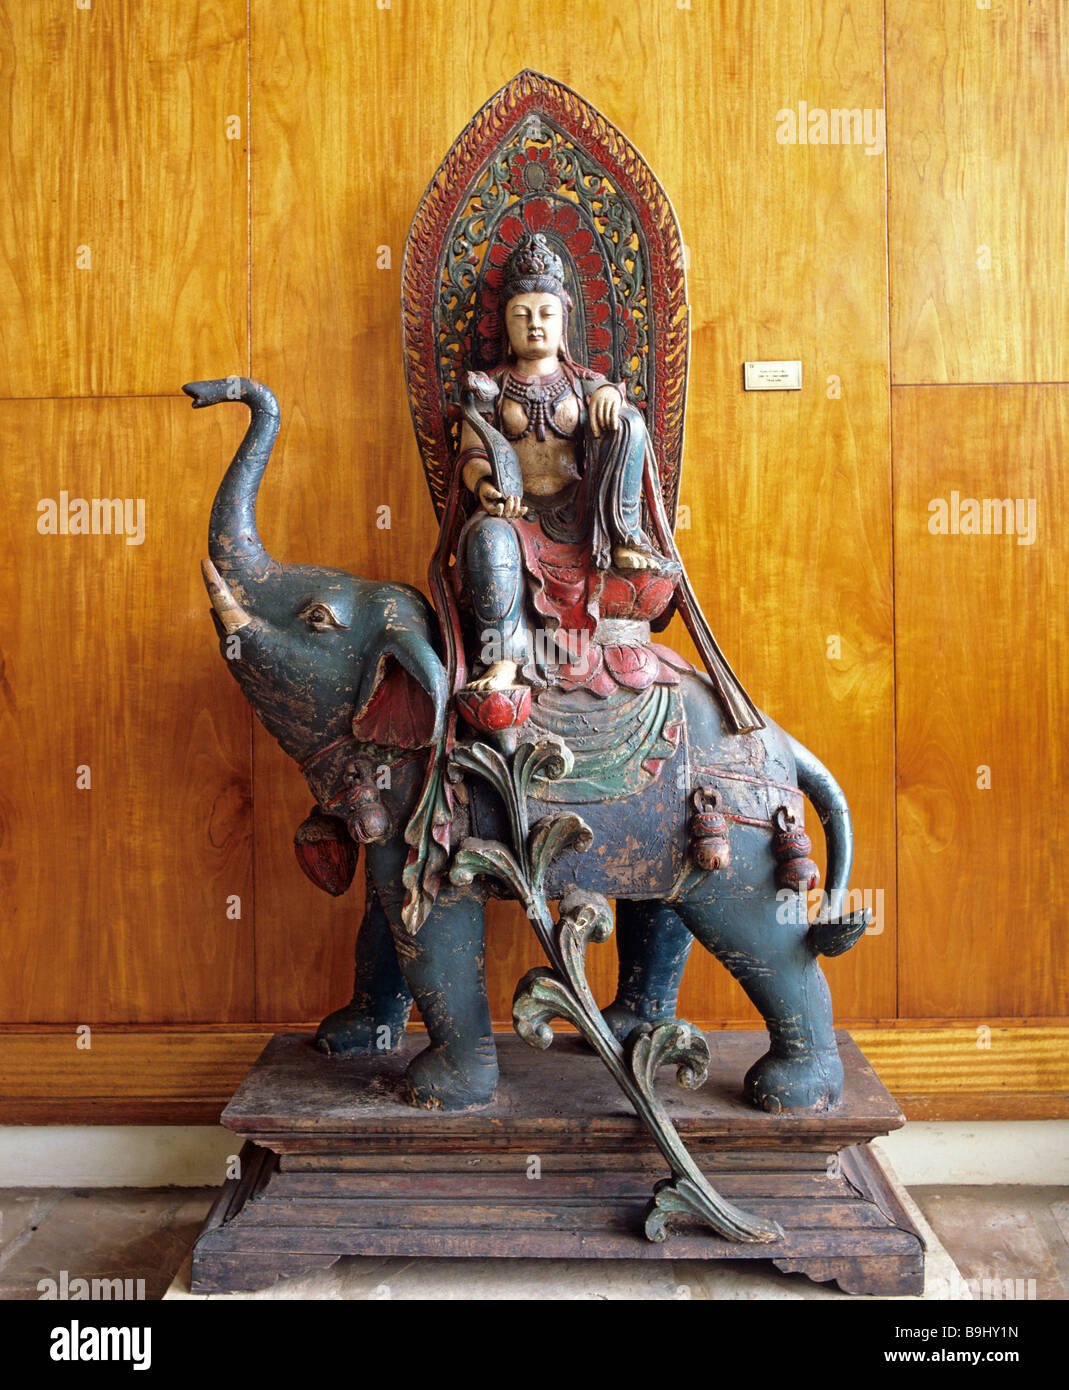 Buddhist elephant statue, Bodhisattva statue, Nepal, South Asia Stock Photo